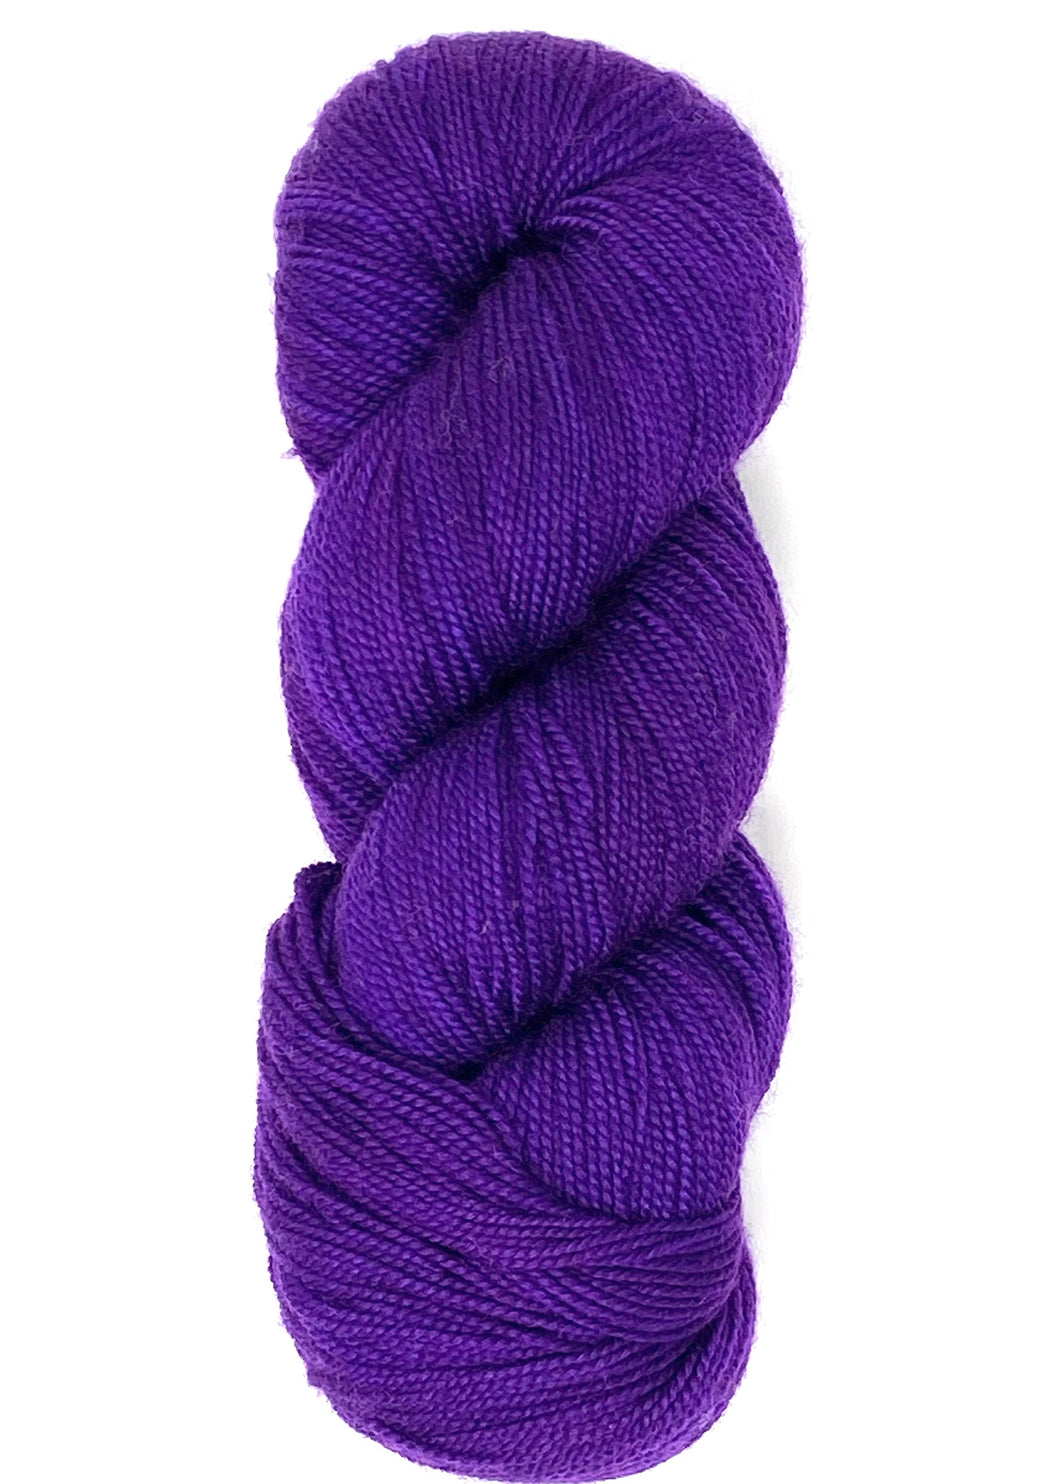 Winter Purple - Baah Yarn La Jolla